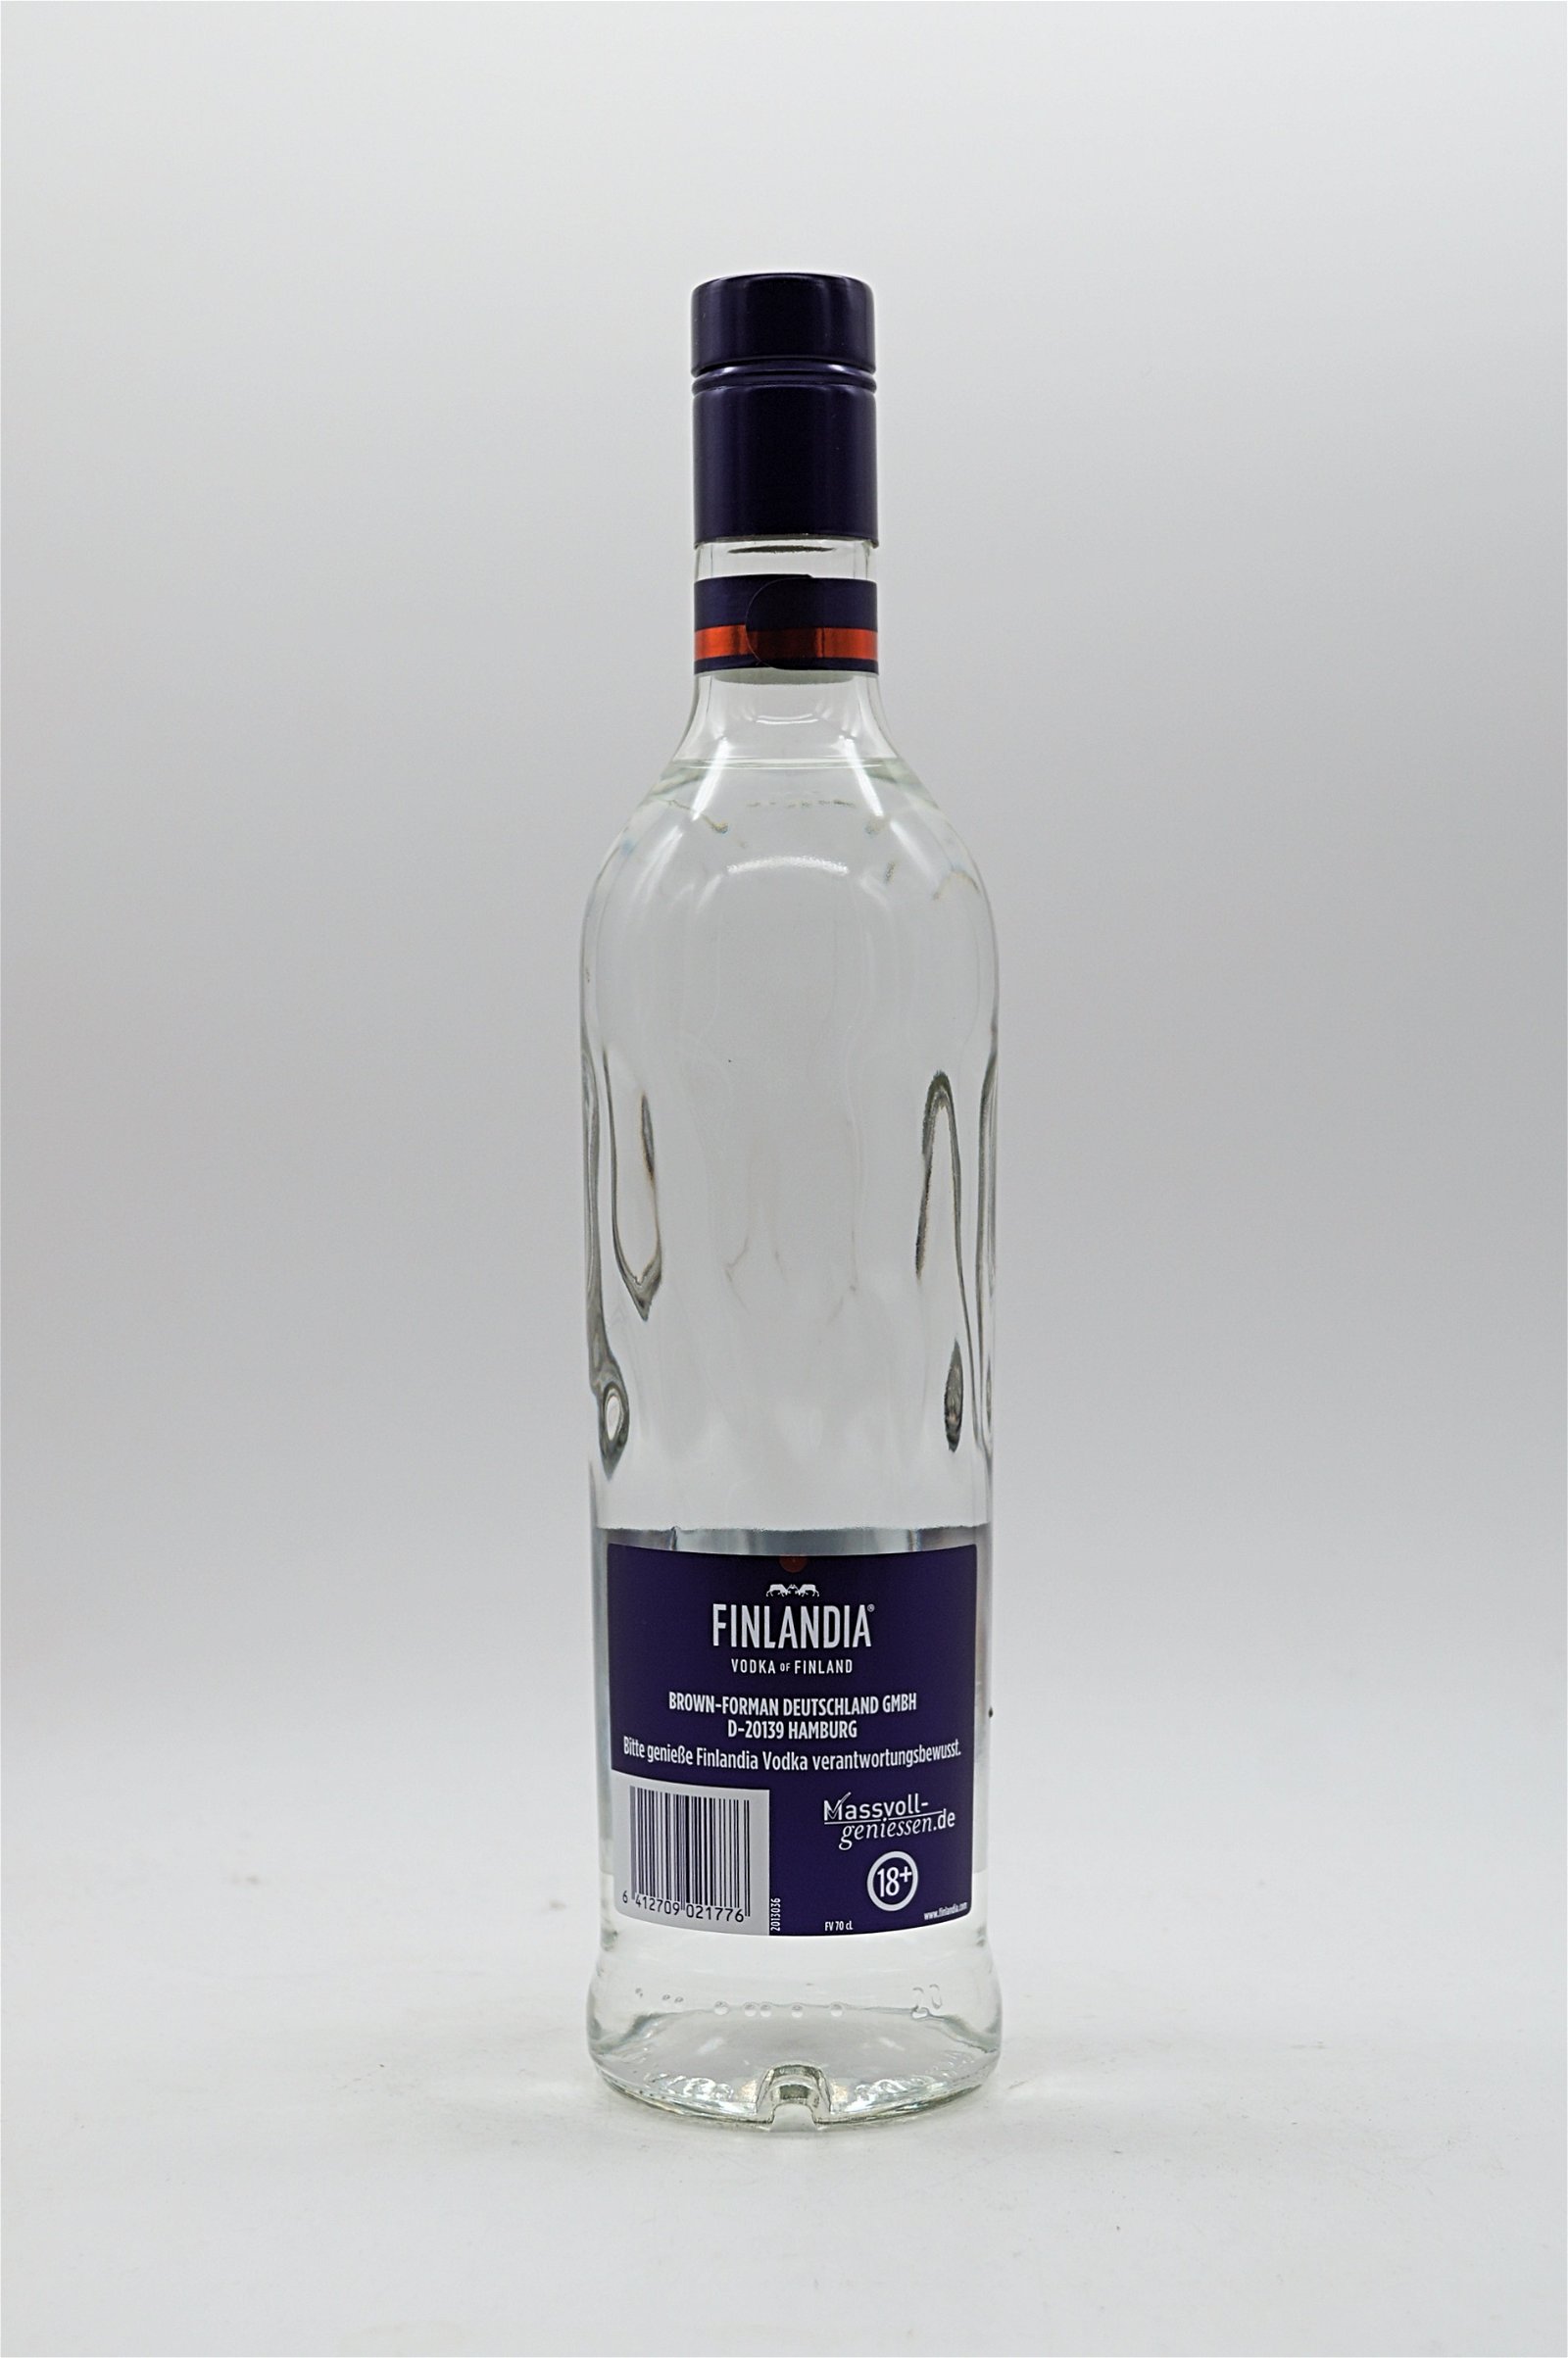 Finlandia Vodka of Finland